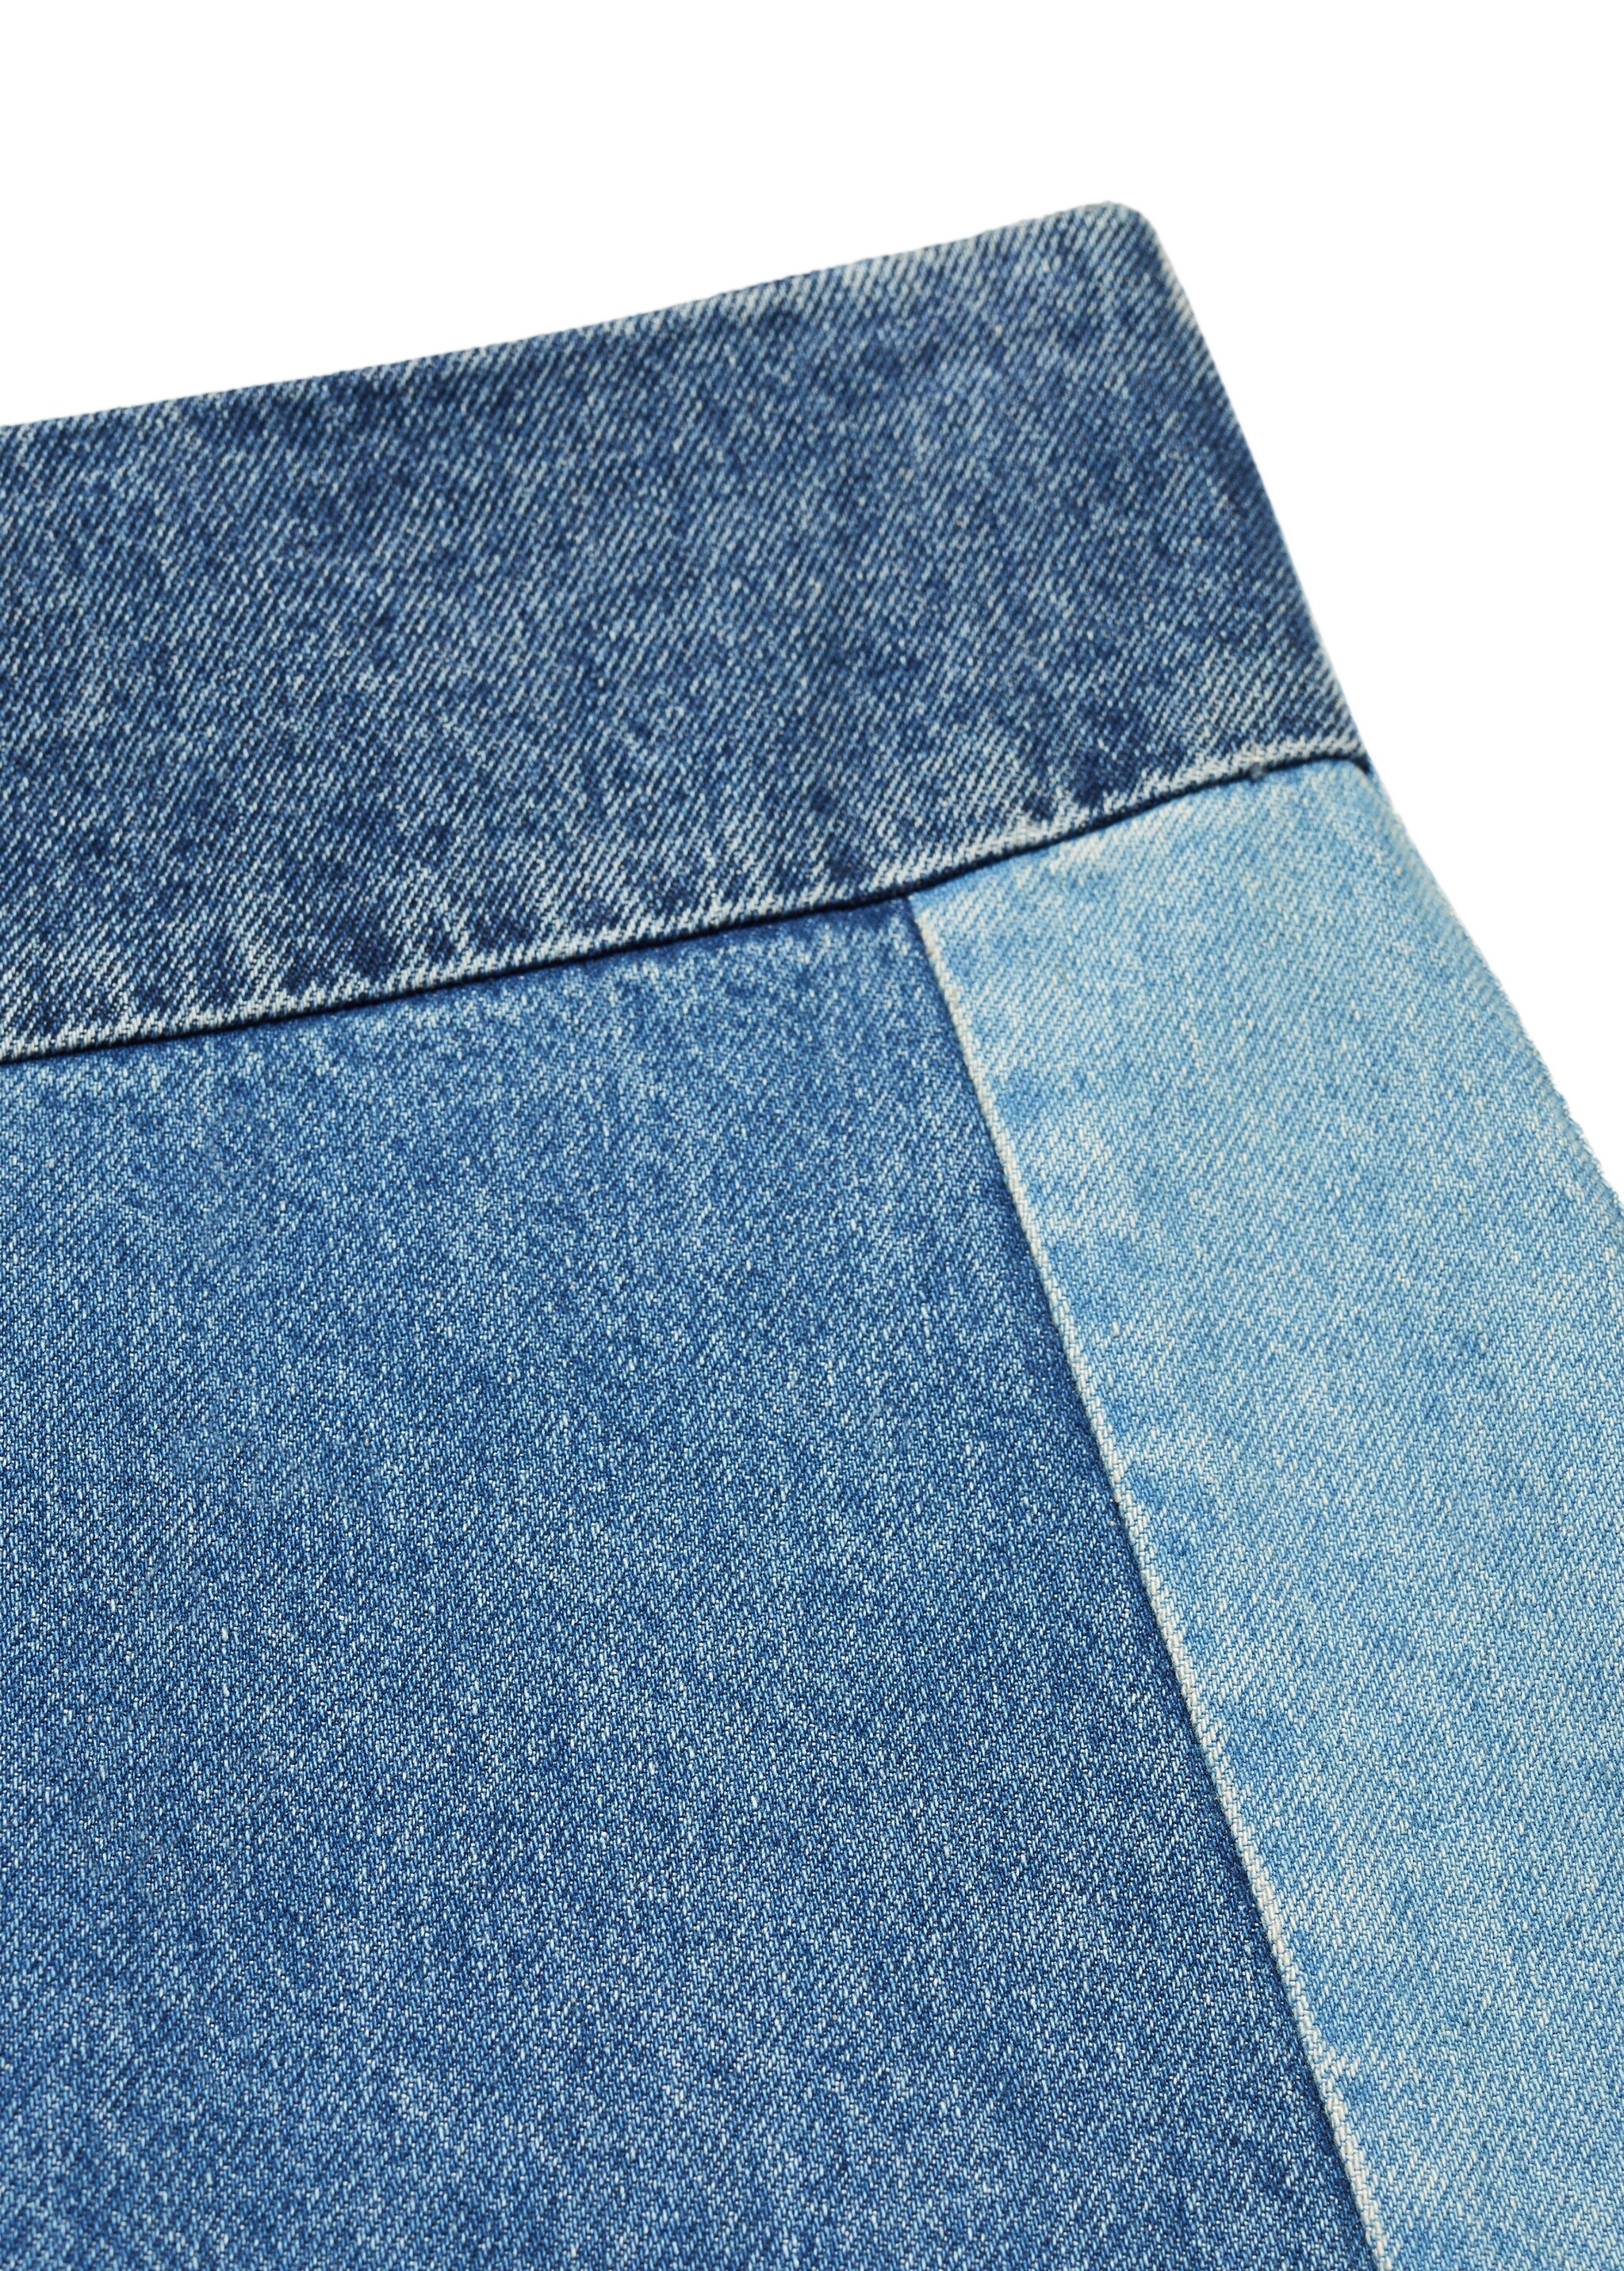 Spódnica dżinsowa patchworkowa - Szczegóły artykułu 8